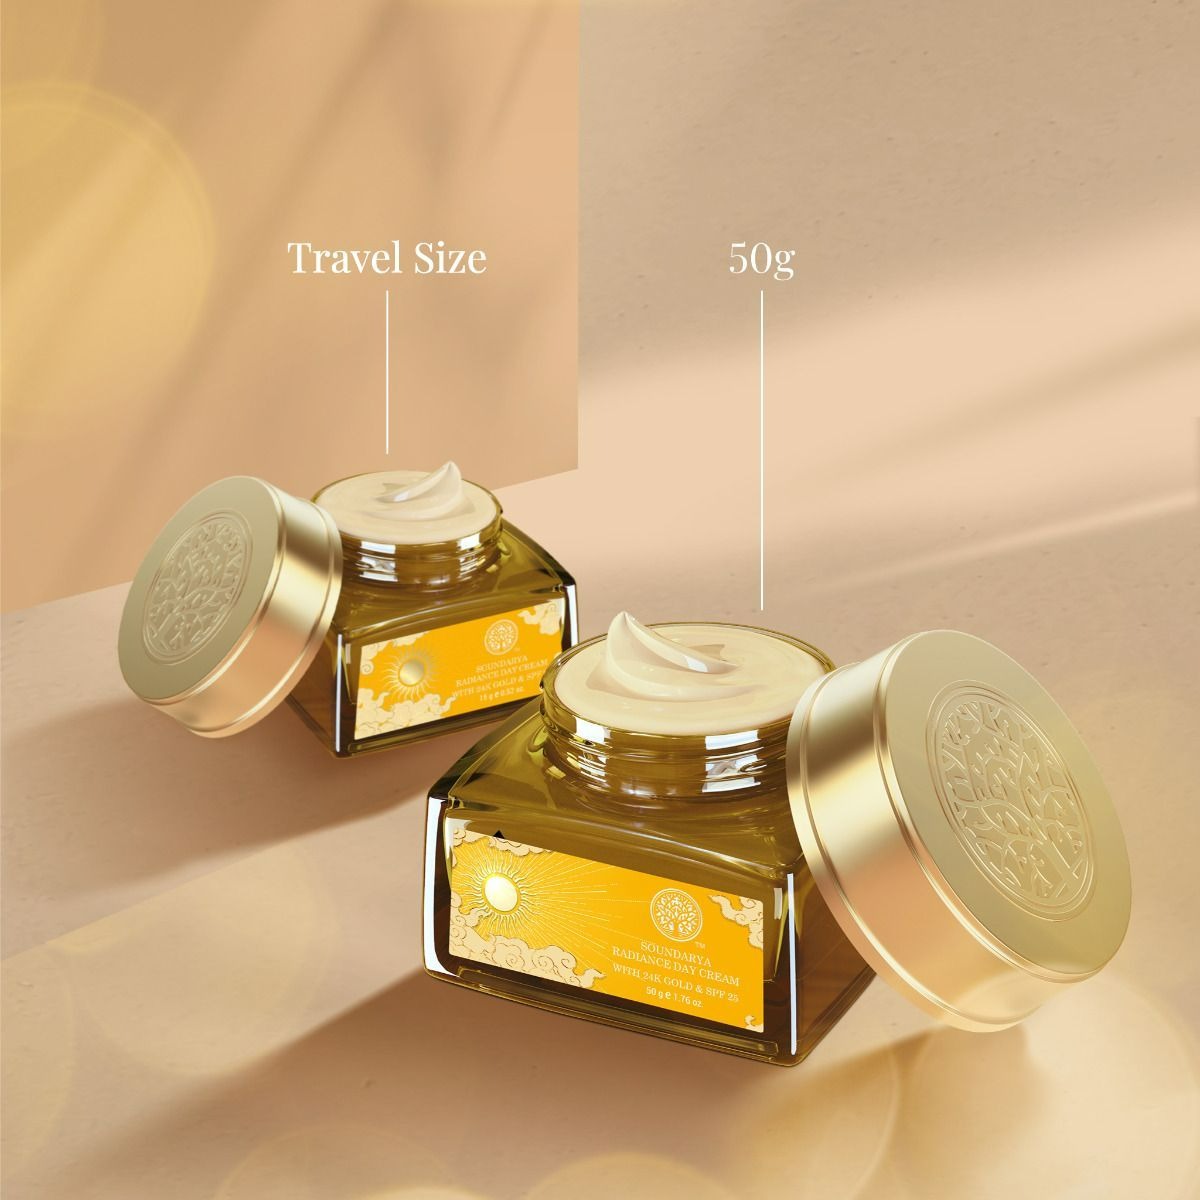 Forest Essentials Soundarya Radiance Cream With 24K Gold & SPF25 - Distacart